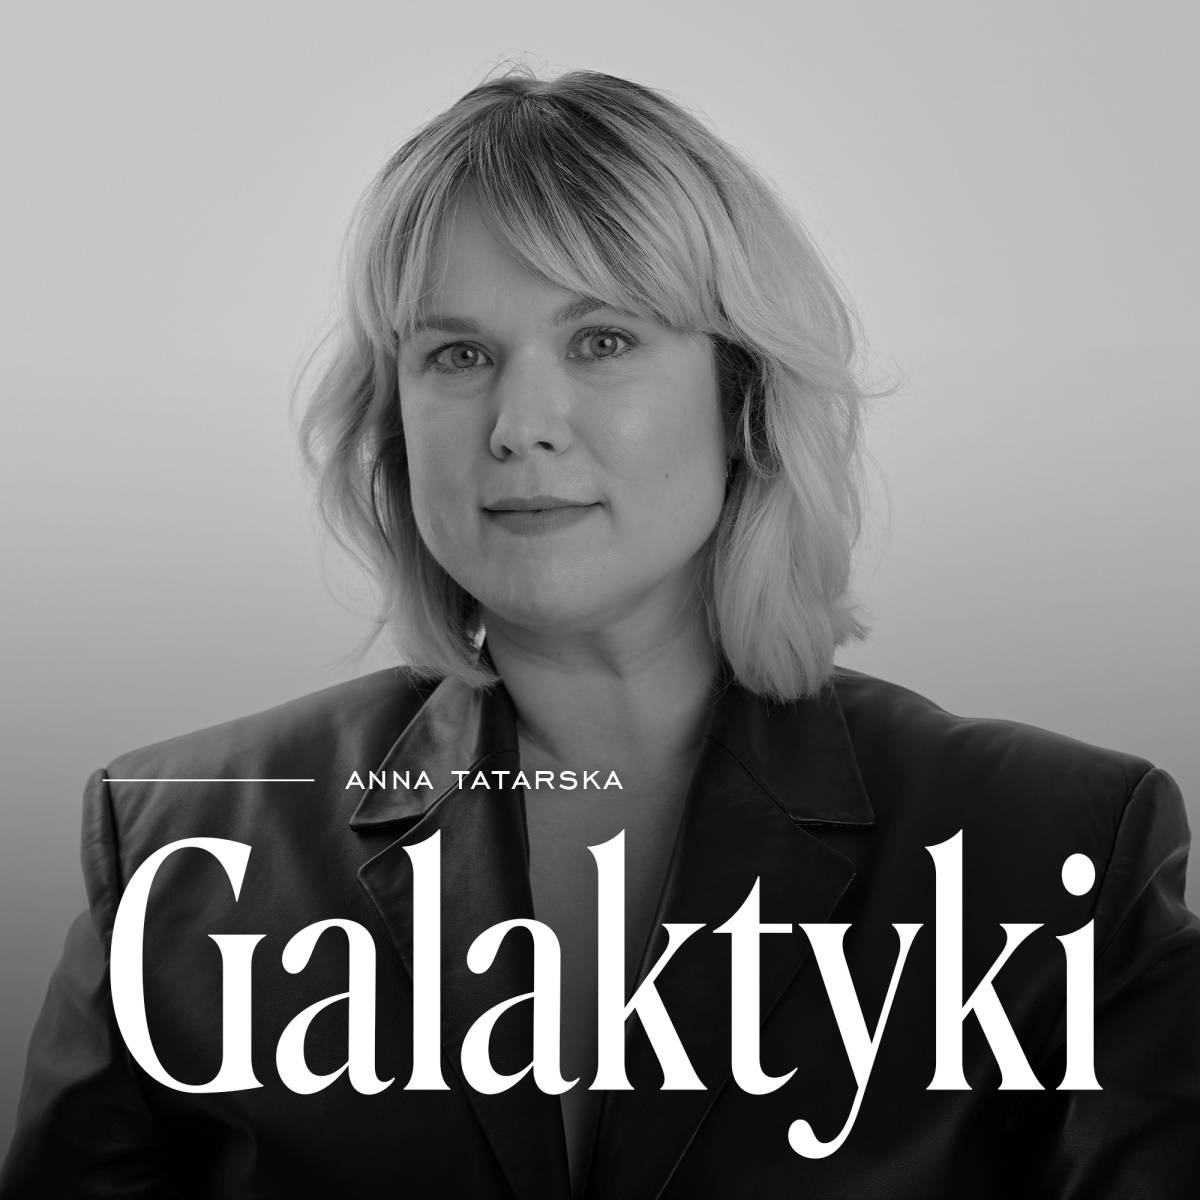 Podcast „Galaktyki” s. 1, odc. 1: Magdalena Boczarska. W premierowym odcinku podcastu „Galaktyki” Anna Tatarska rozmawia z Magdaleną Boczarską.